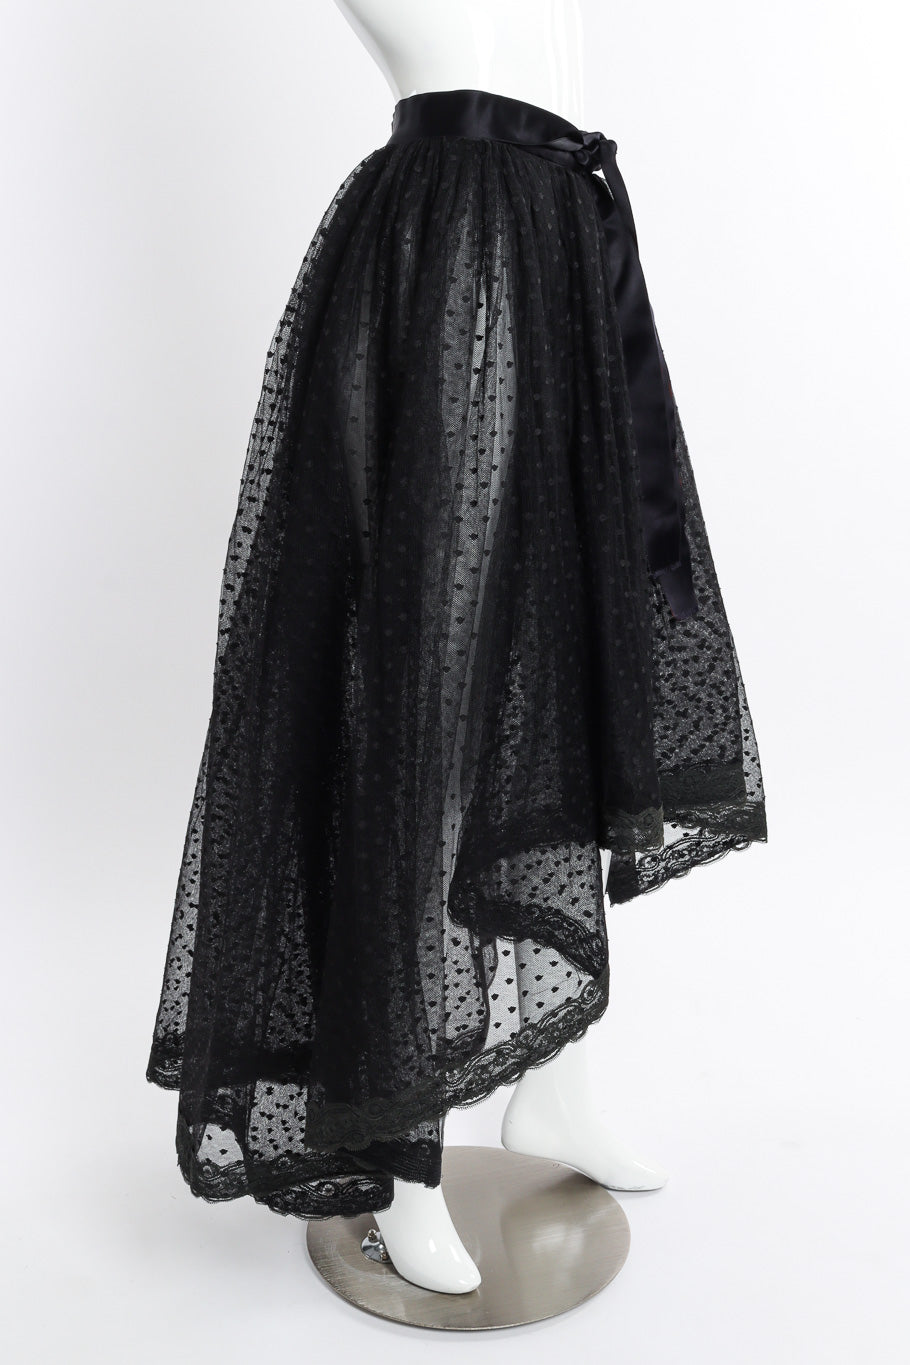 Vintage Bill Blass Polka Dot Tulle Skirt side on mannequin @recessla